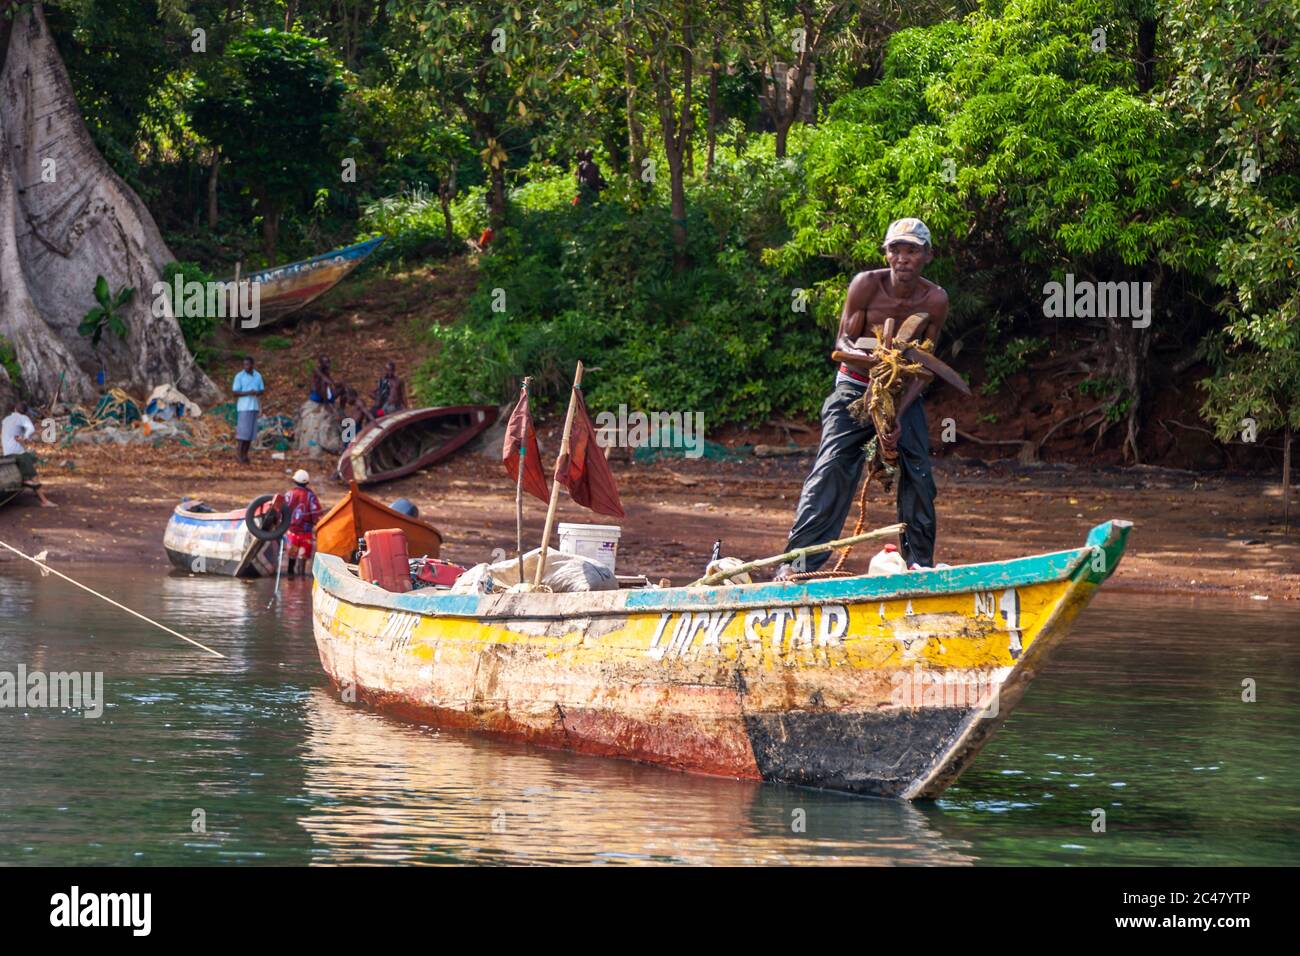 Un pescatore getta l'ancora da una barca chiamata la stella di bloccaggio su Banana Islane, Sierra Leone Foto Stock